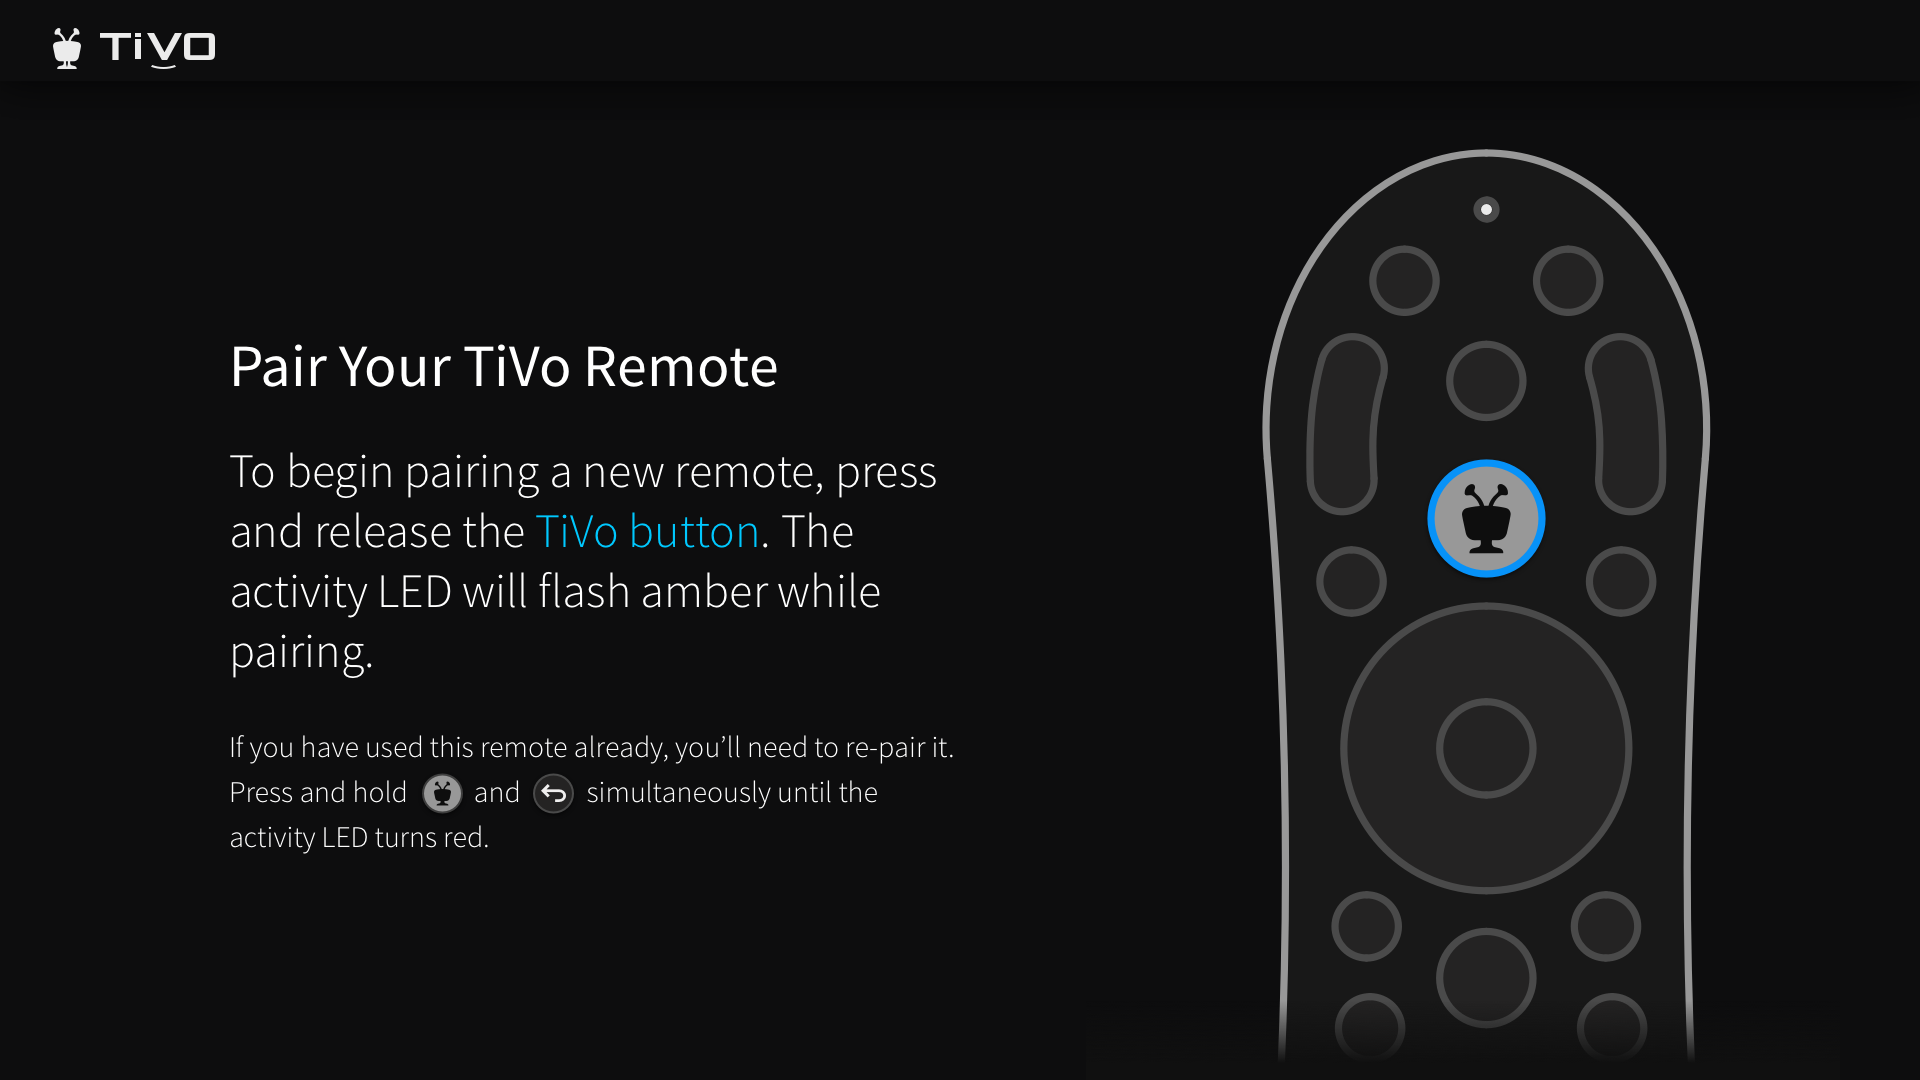 TiVo Stream 4K  Make your favorite apps feel like TV